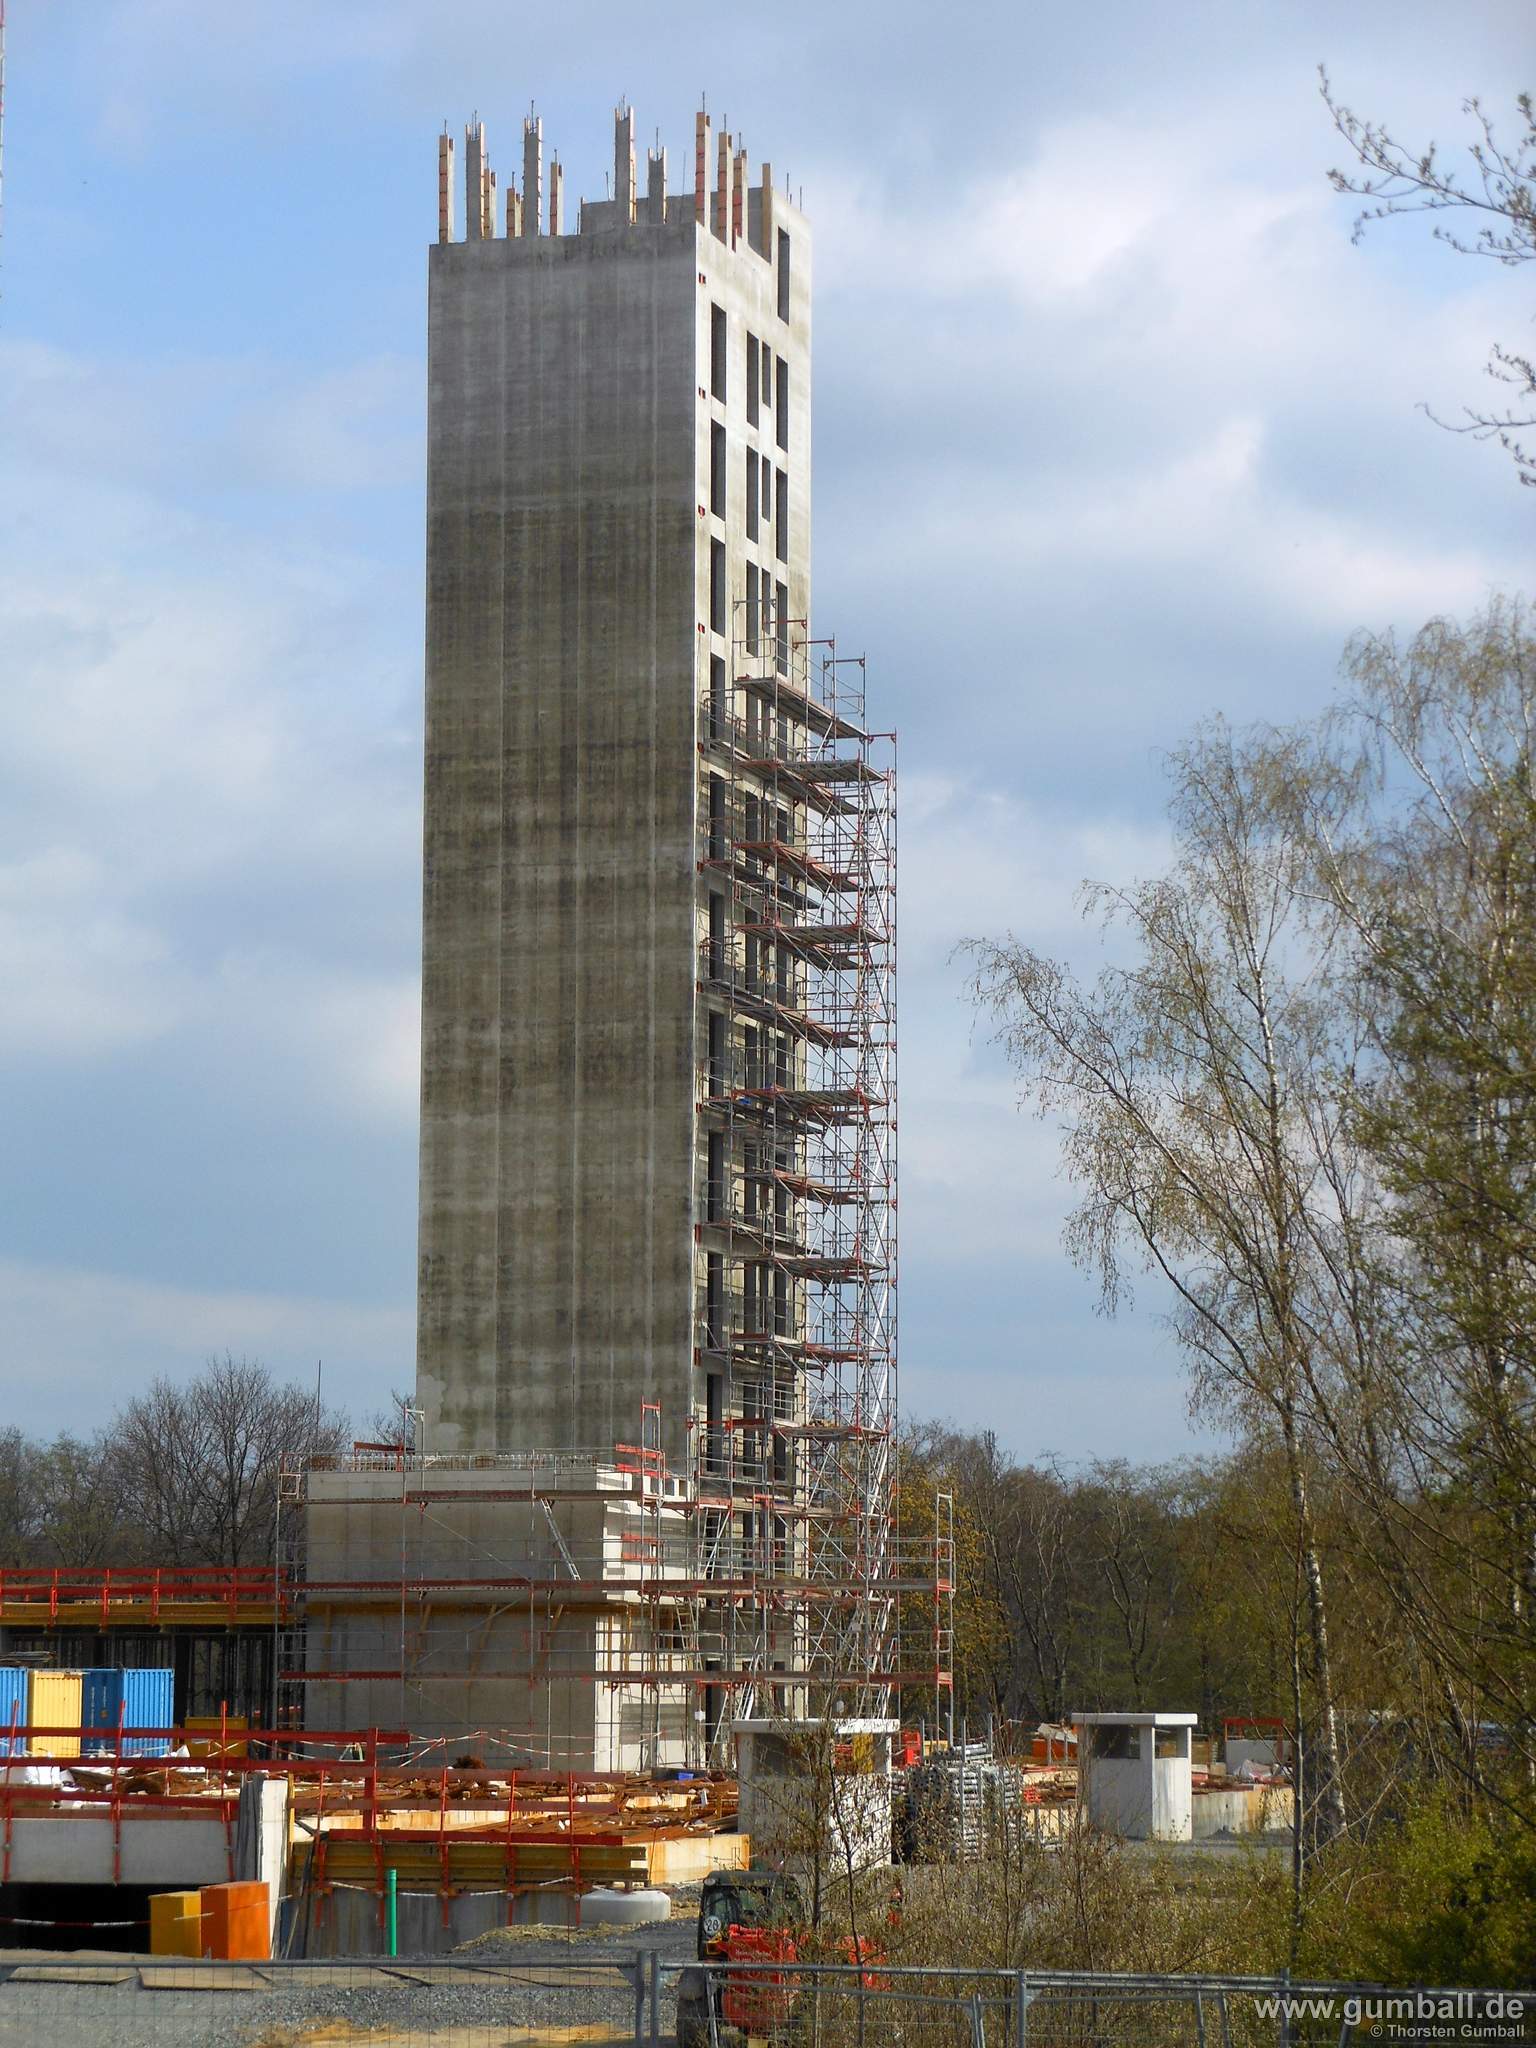 Seven Stones Baustelle, Bochum - April 2021 (4)